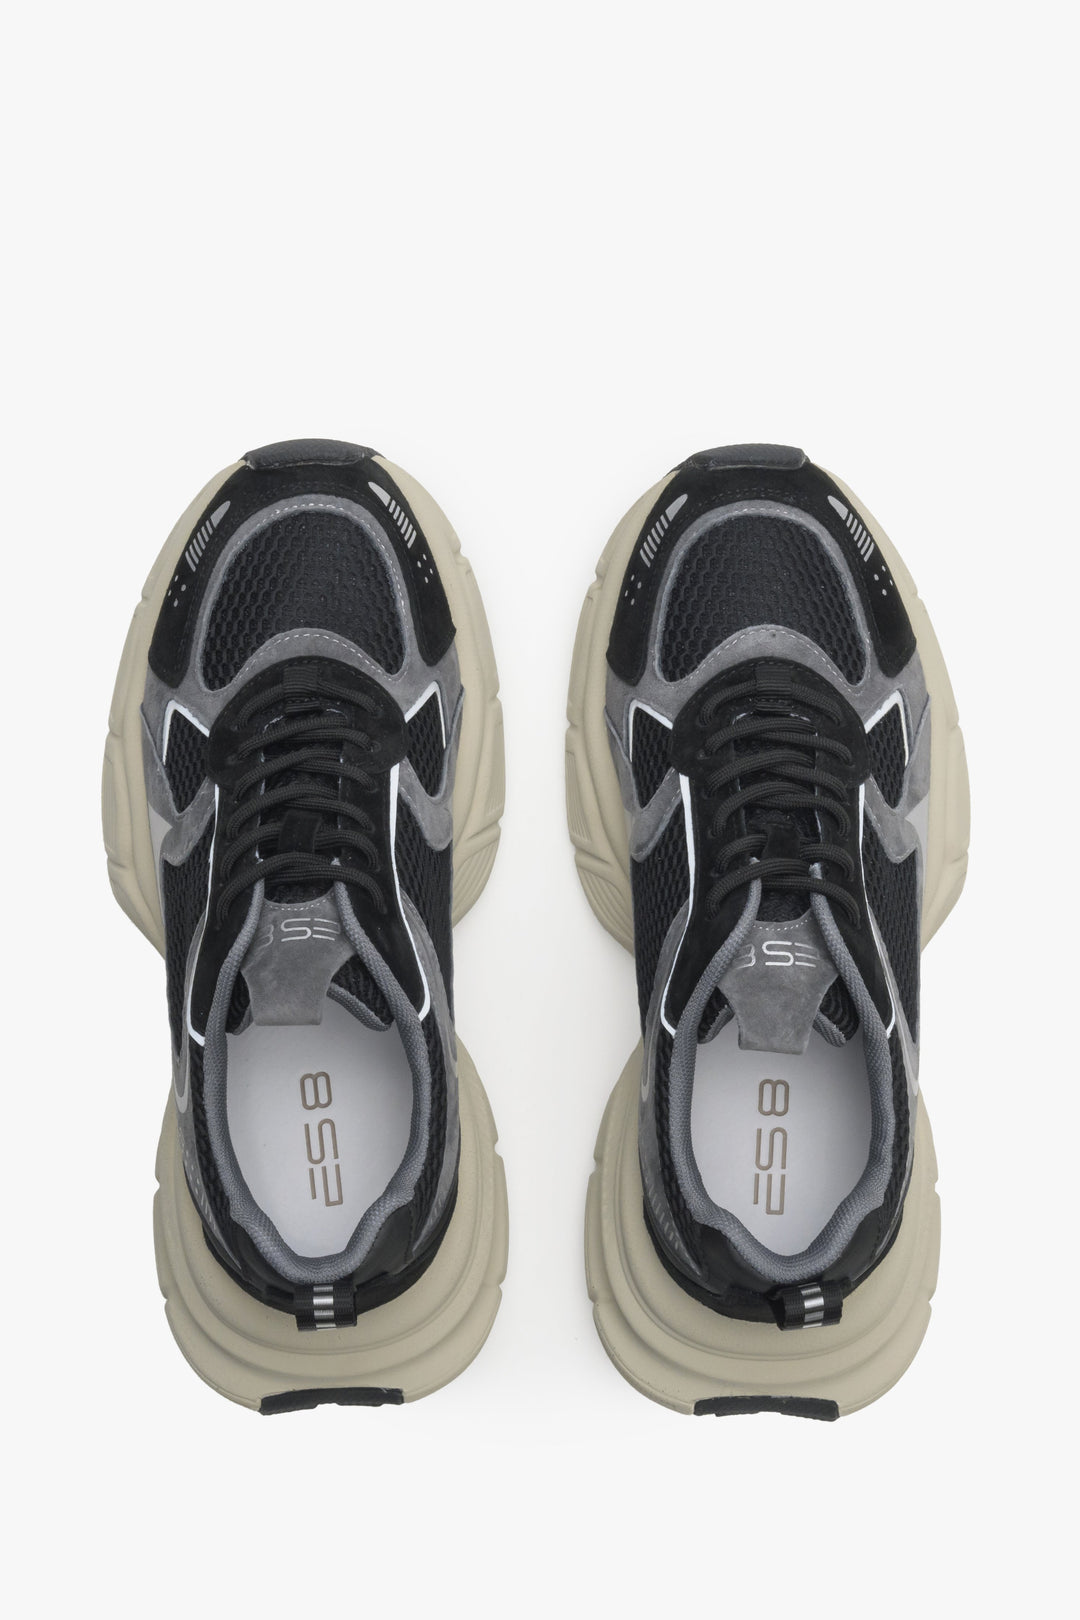 Damskie czarno-szare sneakersy ES8 - prezentacja modelu z góry.